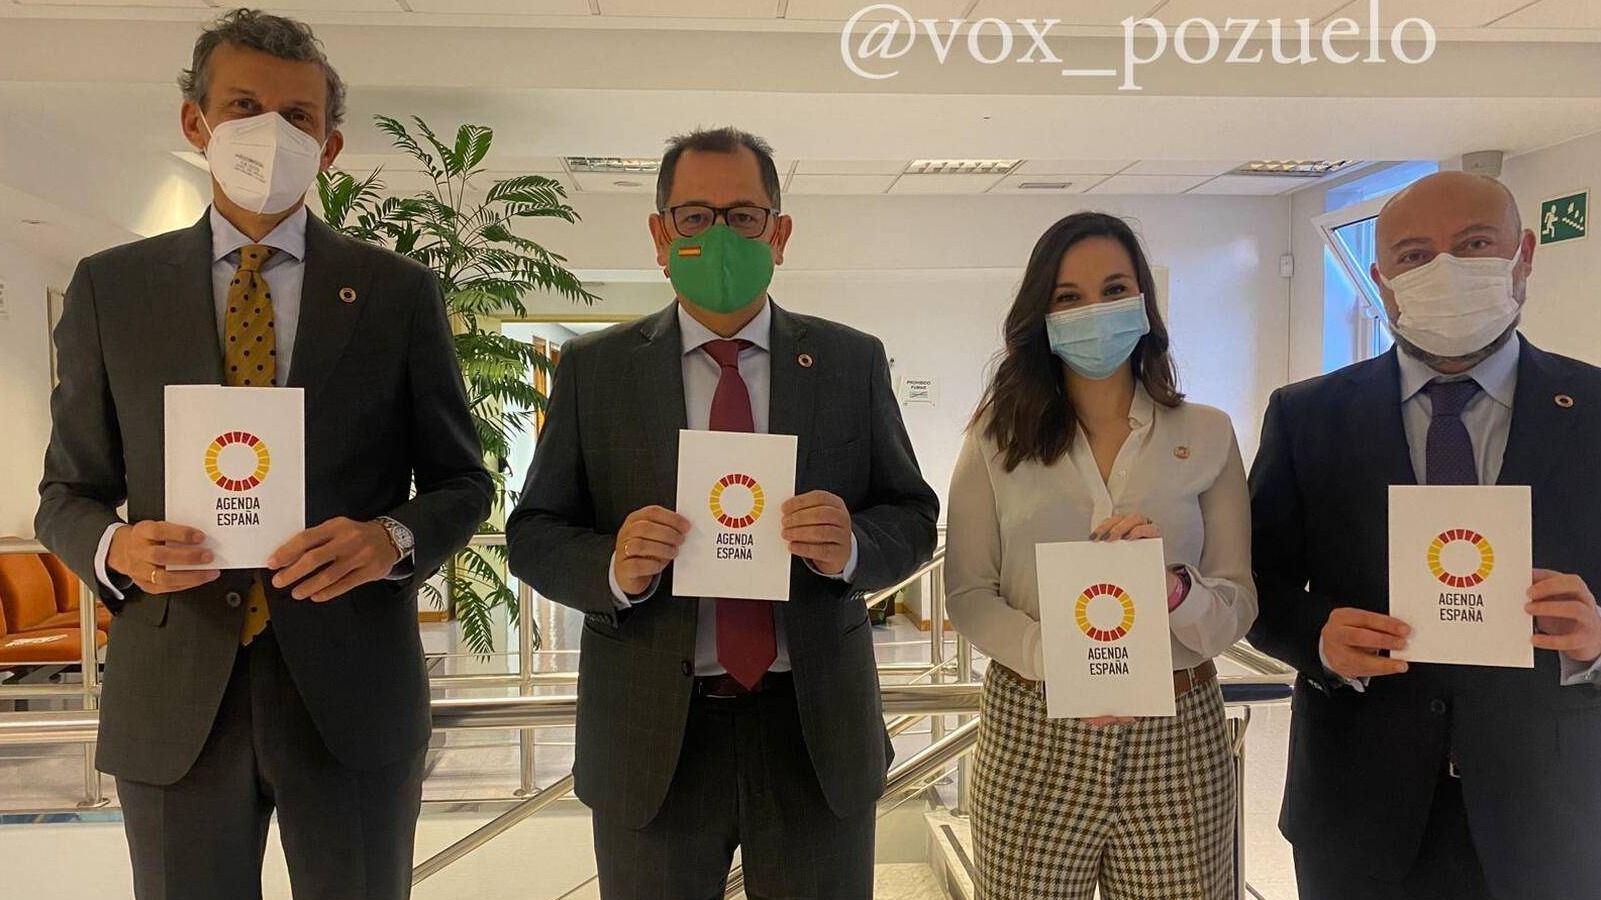 Vox condena las declaraciones del ministro Garzón y acusa al resto de grupos de estar "sometidos a la Agenda 2030"